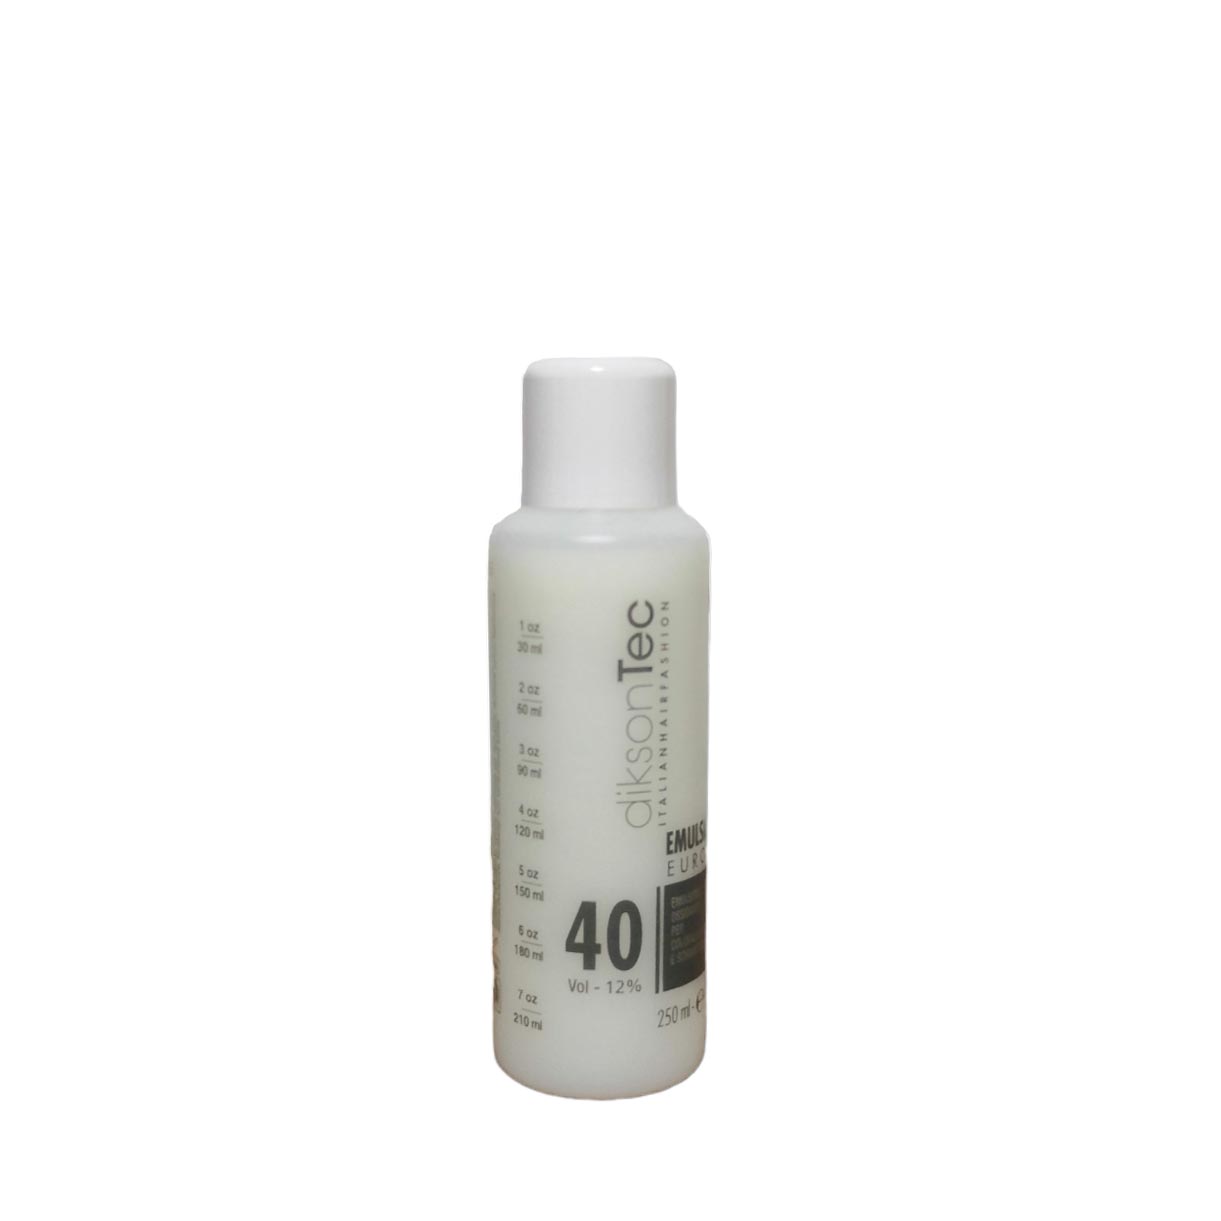 DIKSON OXY krémový oxidant neparfumovaný 12% - 250 ml